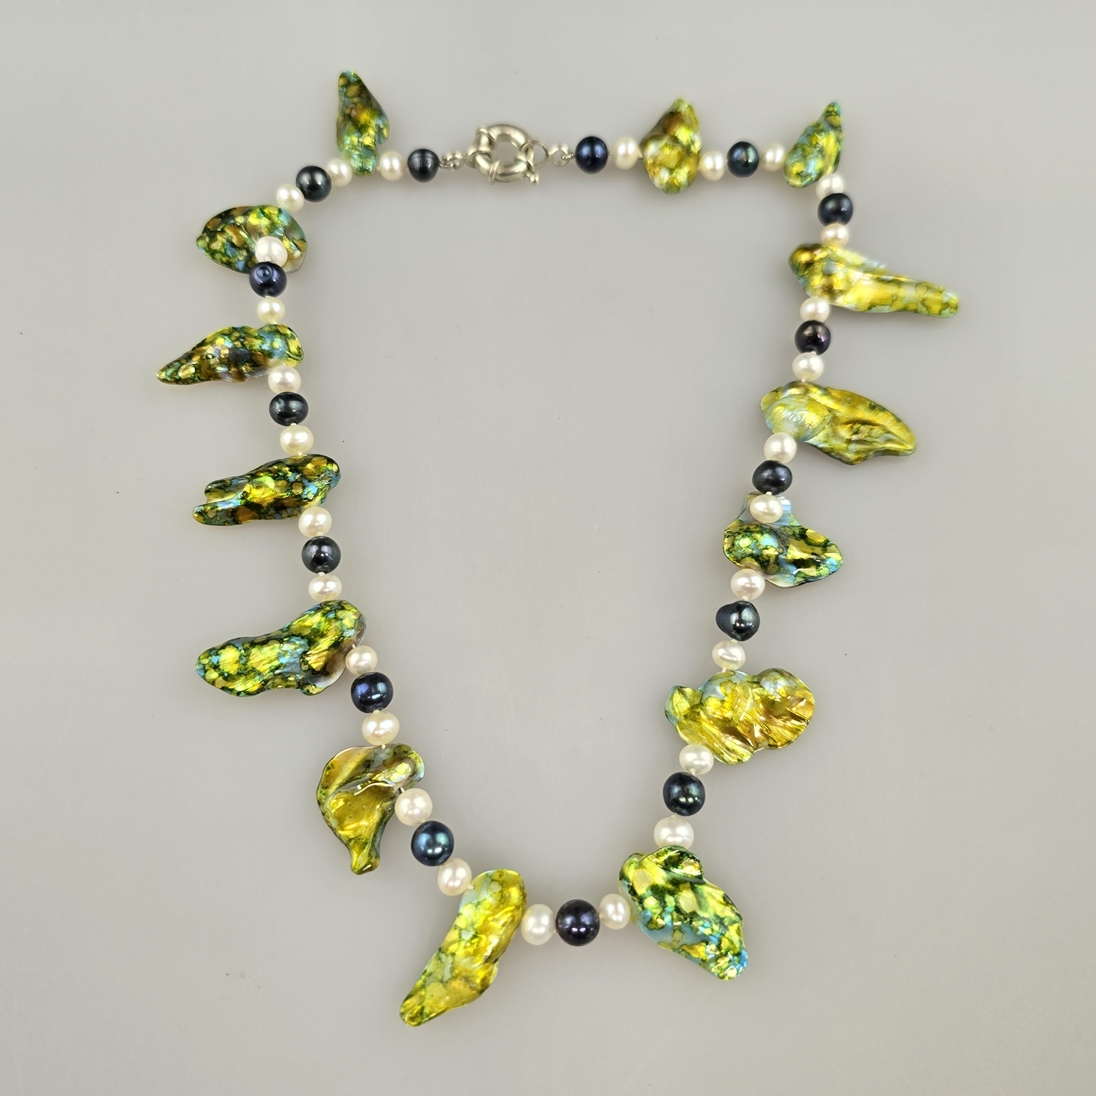 Extravagante Halskette - 14 unregelmäßig geformte naturgewachsene Perlmuttelemente, grün-gelb schil - Image 3 of 6